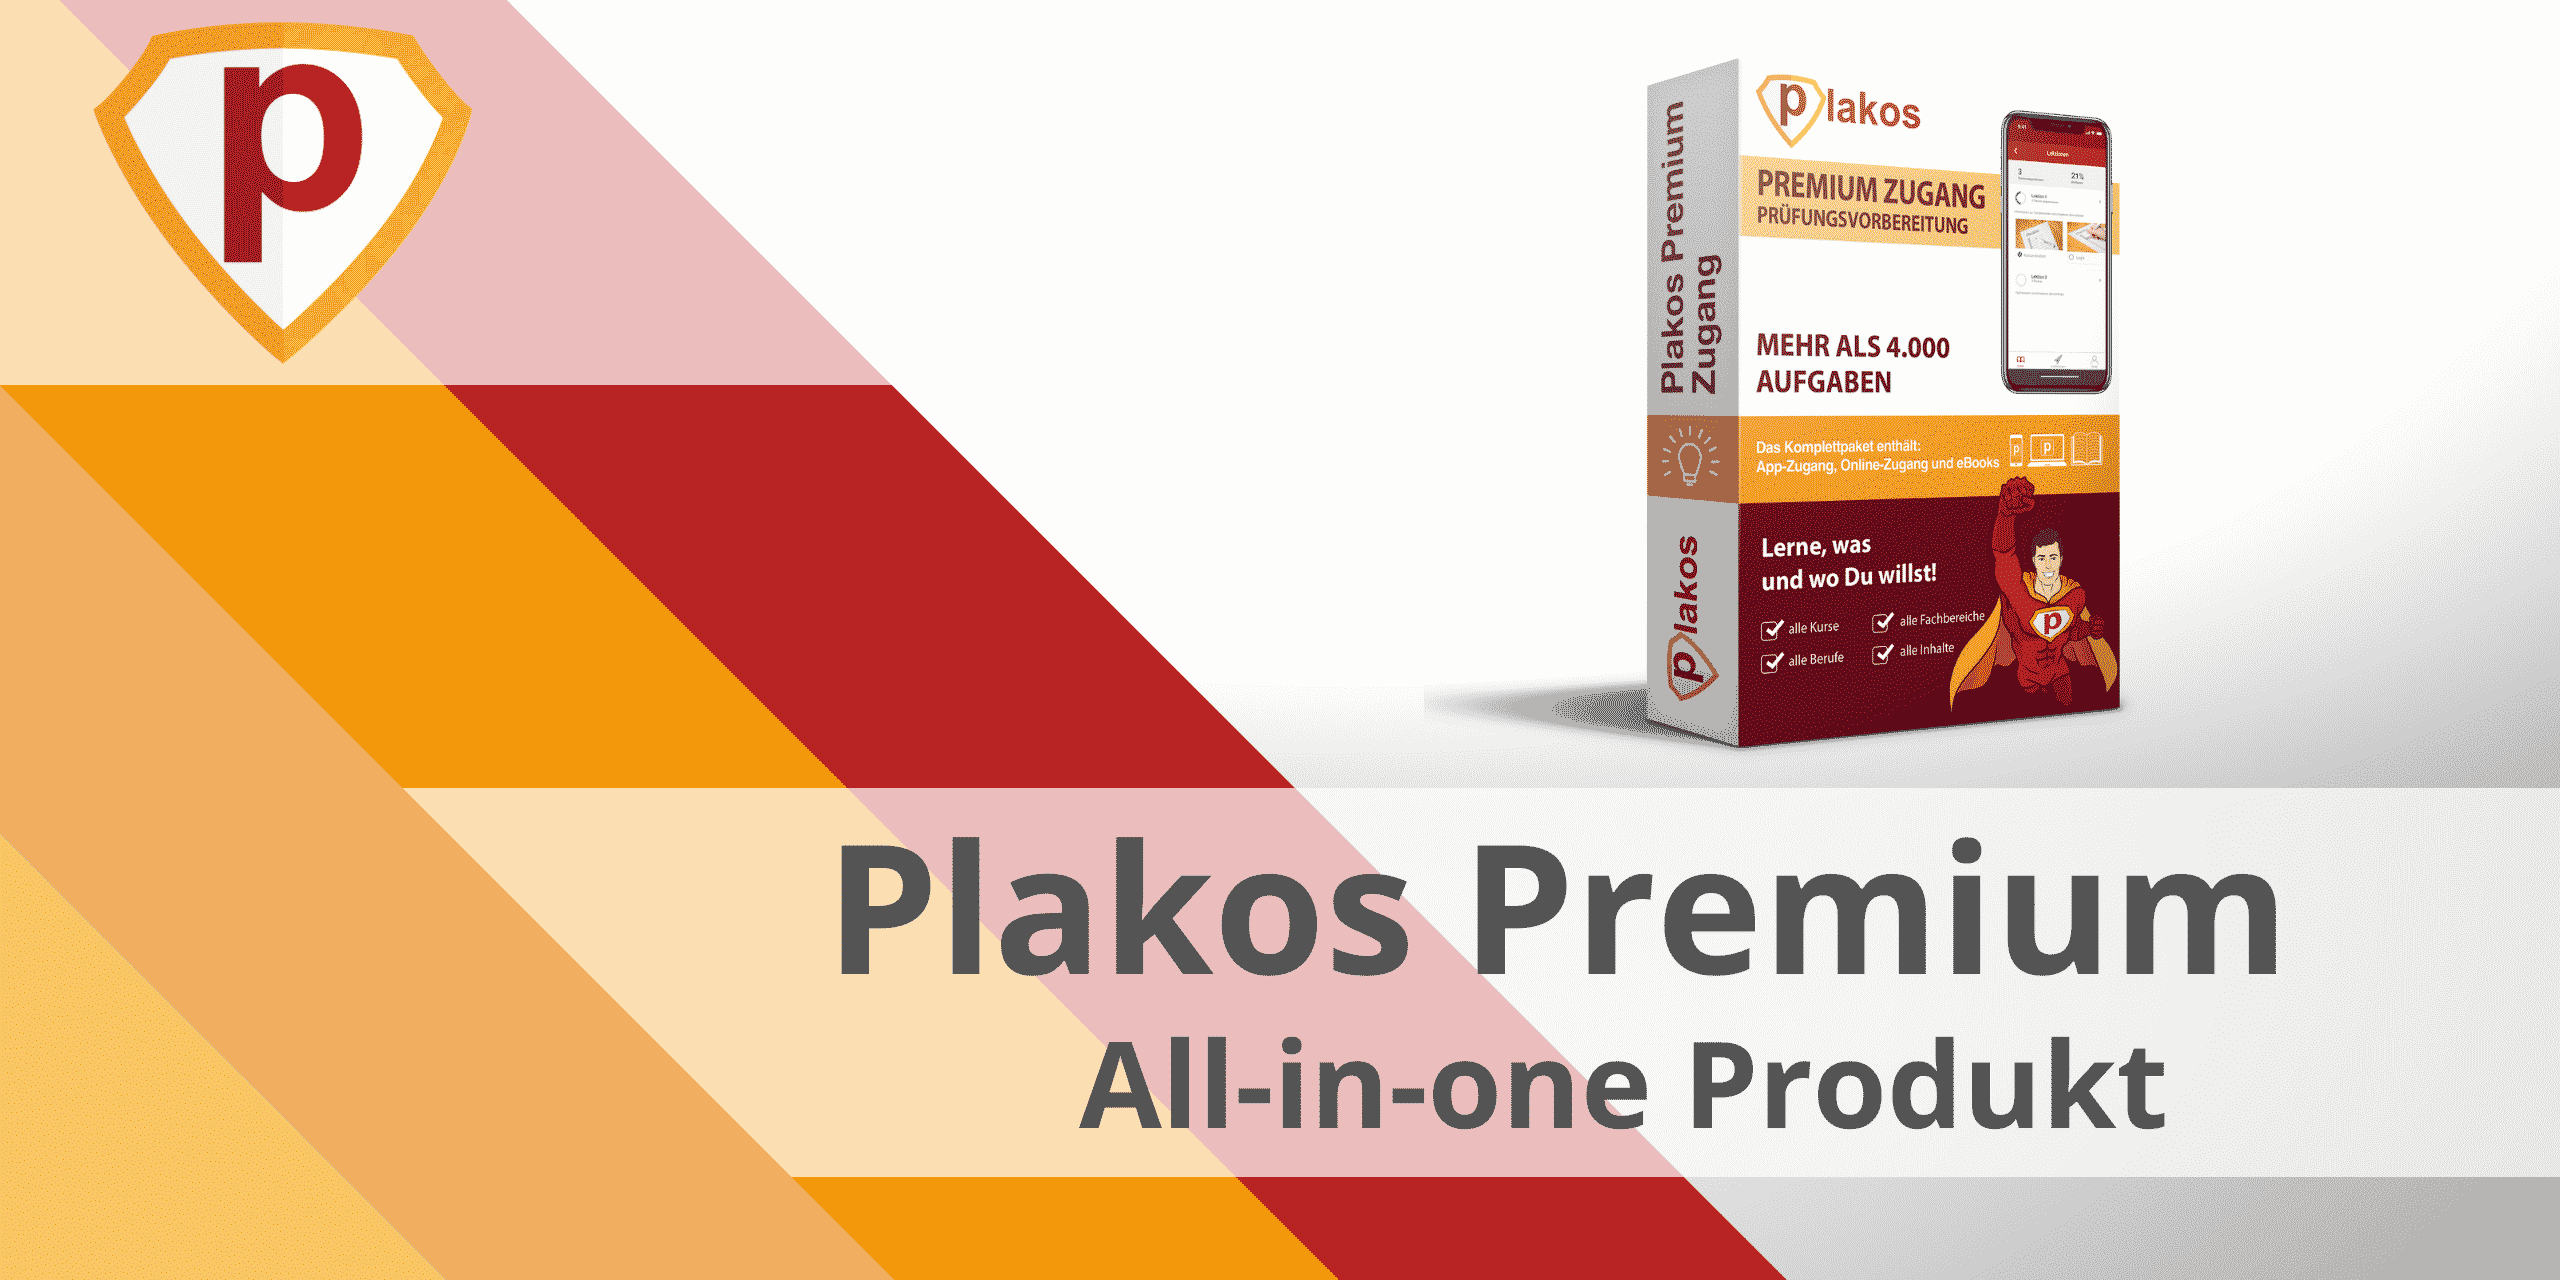 All-in-one: Plakos Premium Produkt – alle Kurse, alle Fachbereiche